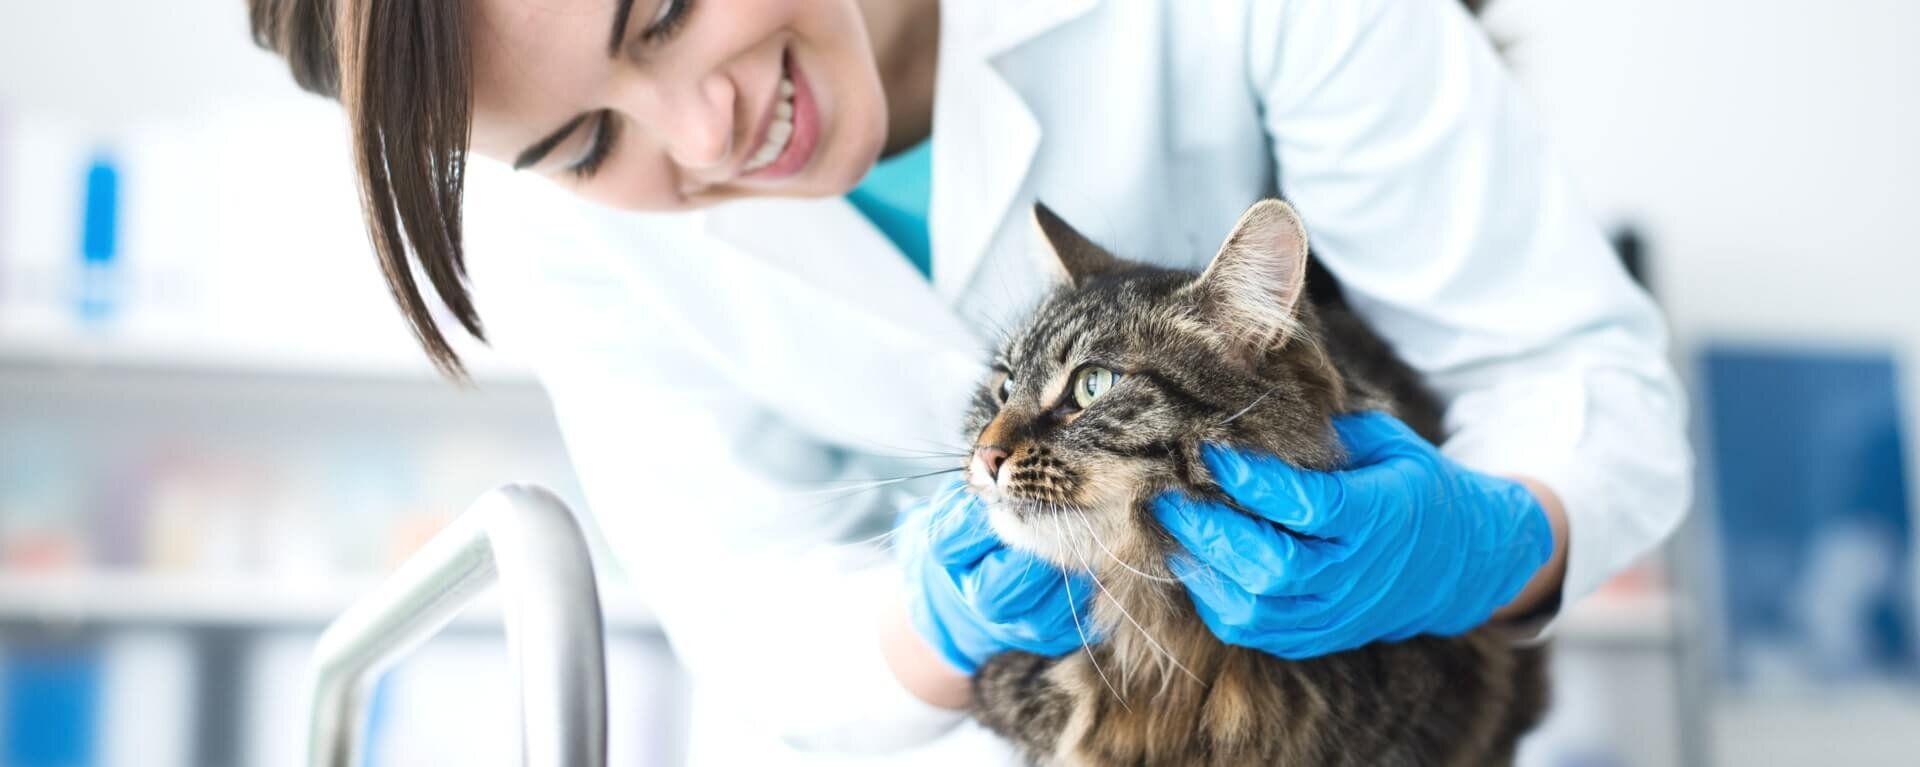 Причины неприятного запаха у кота, что делать и как лечить